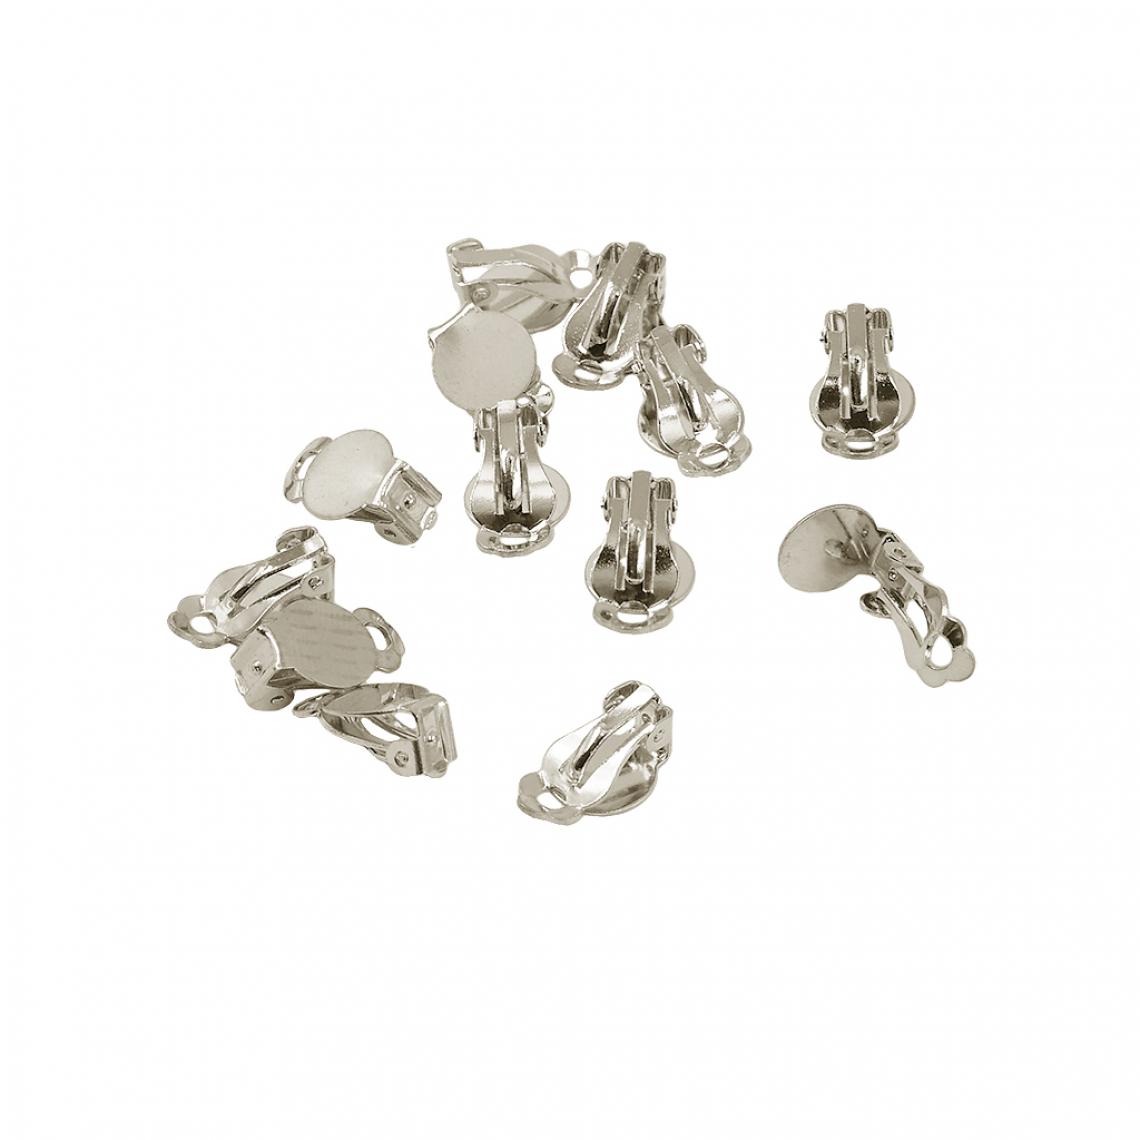 marque generique - 12pieces clip-on colle sur le tampon blanc boucles d'oreilles conclusions bricolage faire argent blanc - Perles